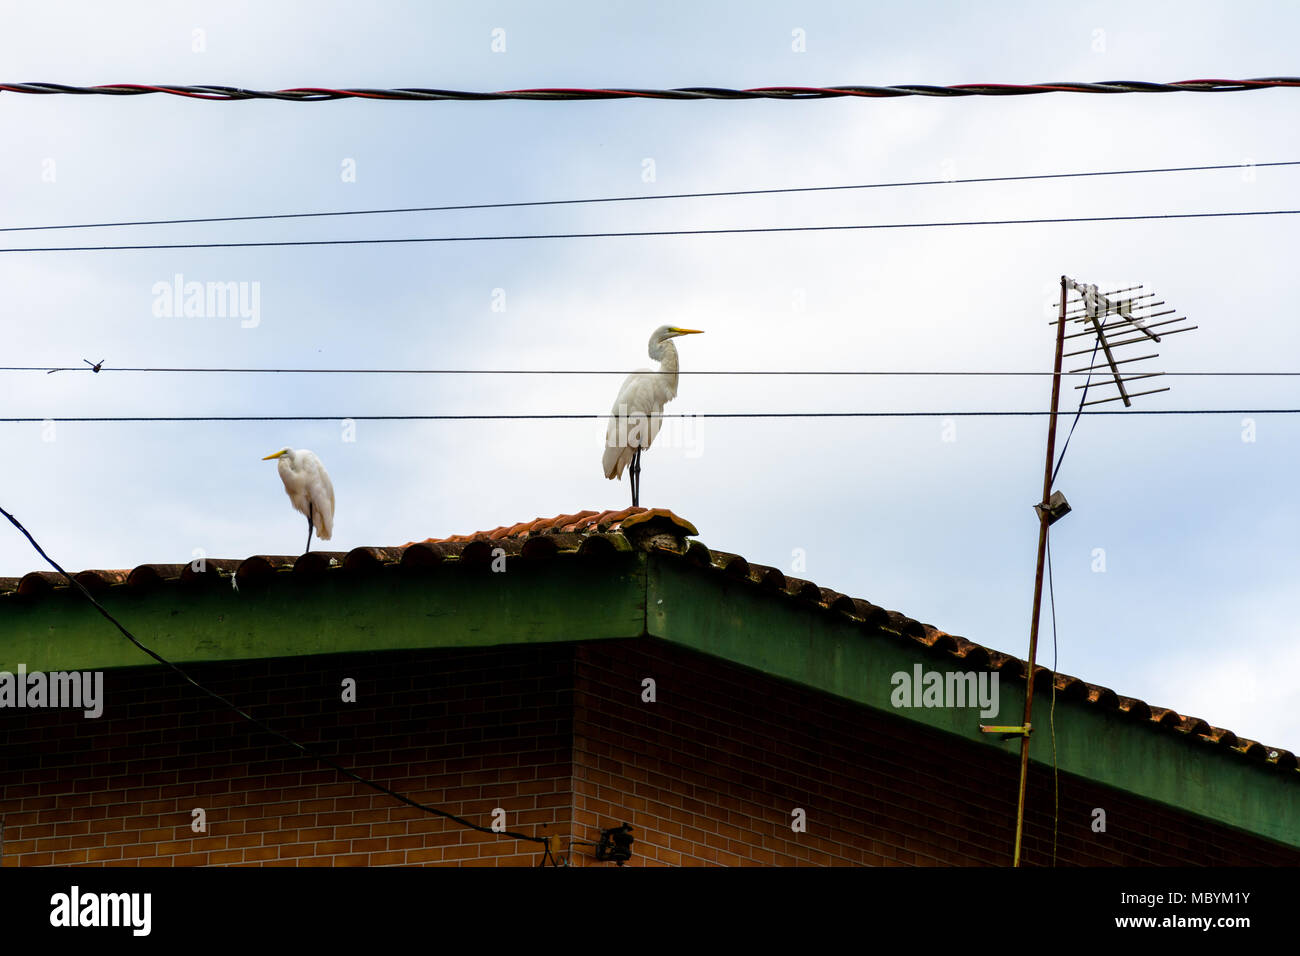 Große, weiße Vögel, Reiher stand auf einem Dach in der Nähe von elektrischen Leitungen und eine TV-Antenne, in den städtischen Teil der Ubatuba, Brasilien Stockfoto